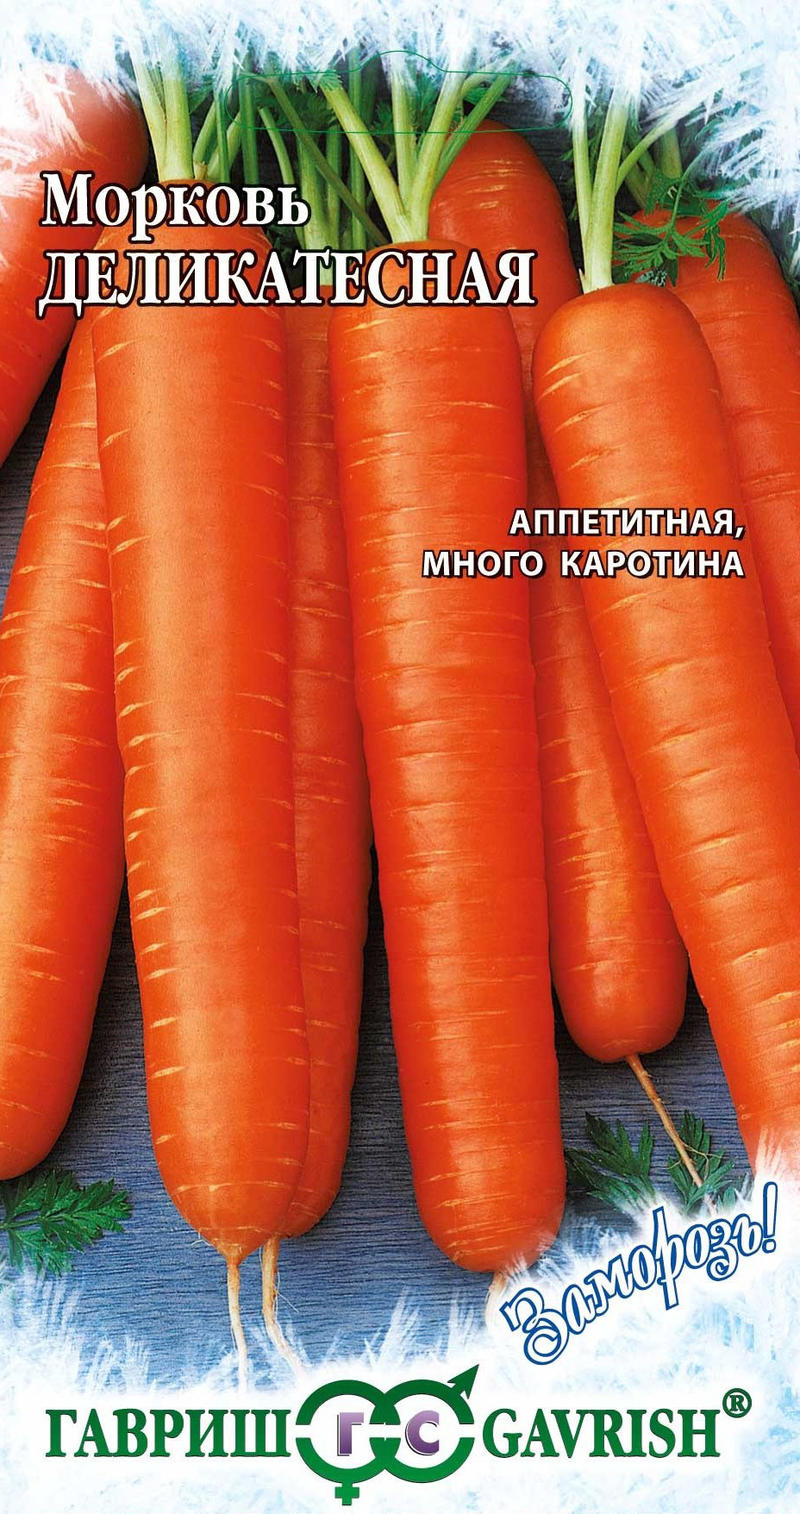 Морковь Деликатесная среднеспелая, для хранения 2гр Гавриш/БП